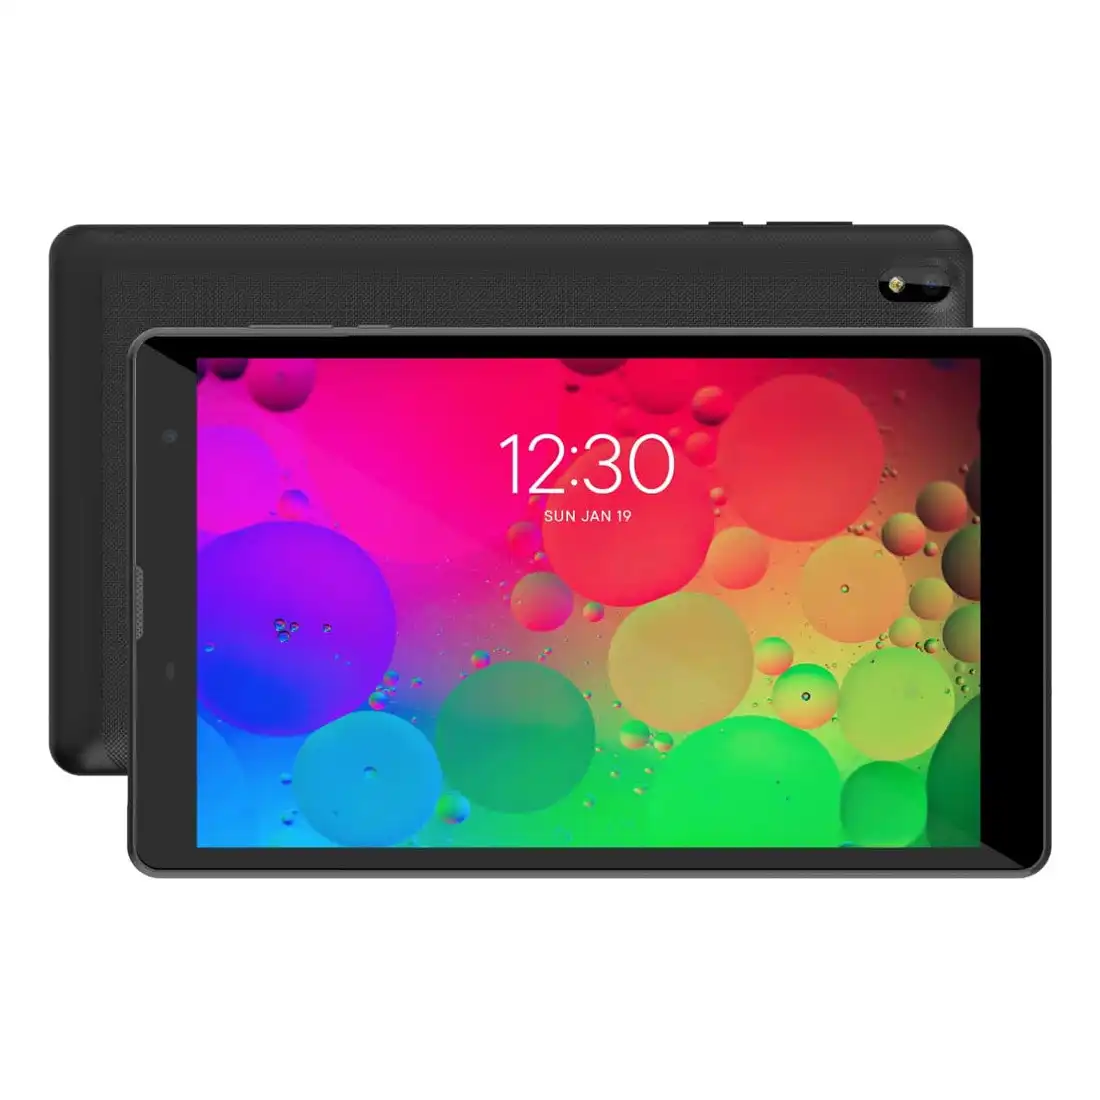 IQU T8 4G LTE Tablet (8'', 2GB/16GB) - Black